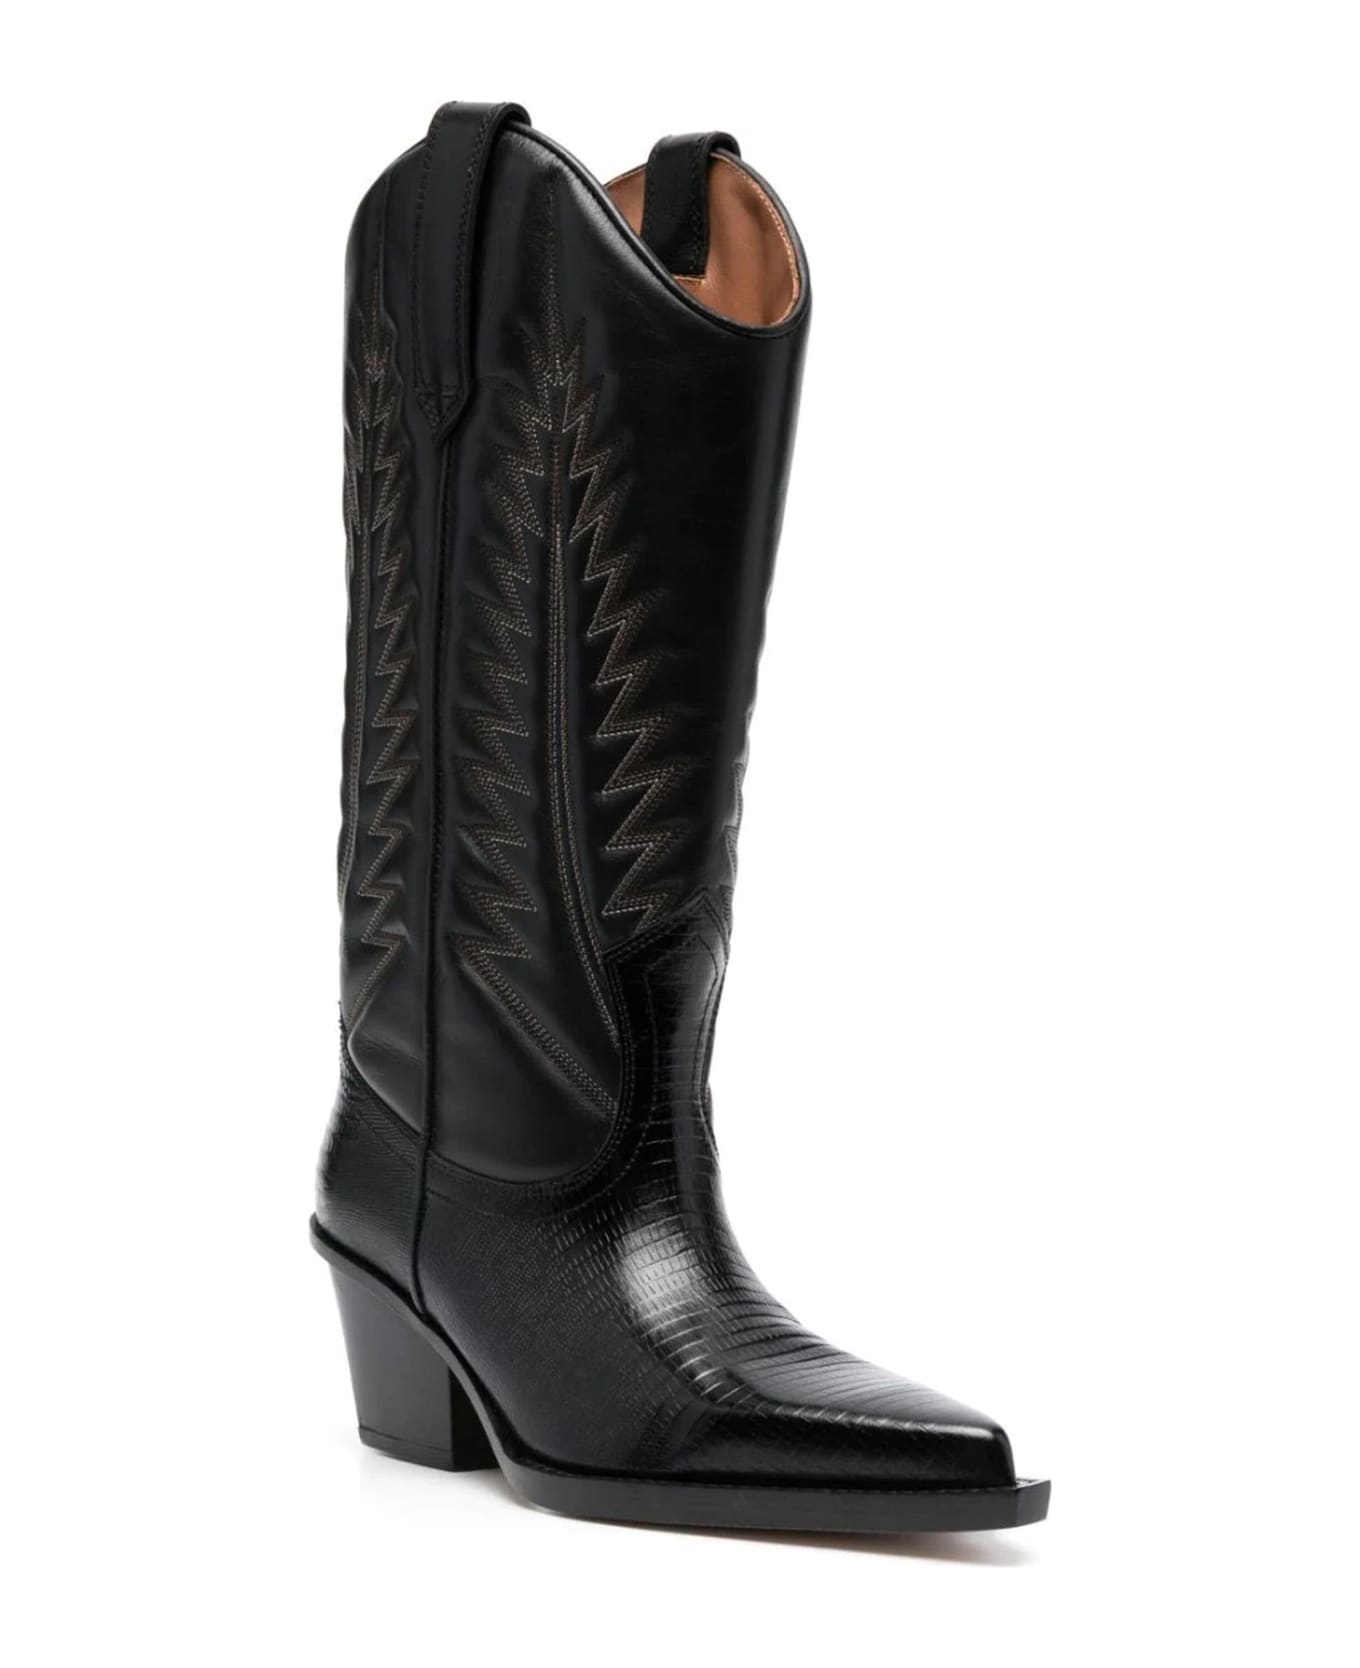 Paris Texas Rosario Boots - Black